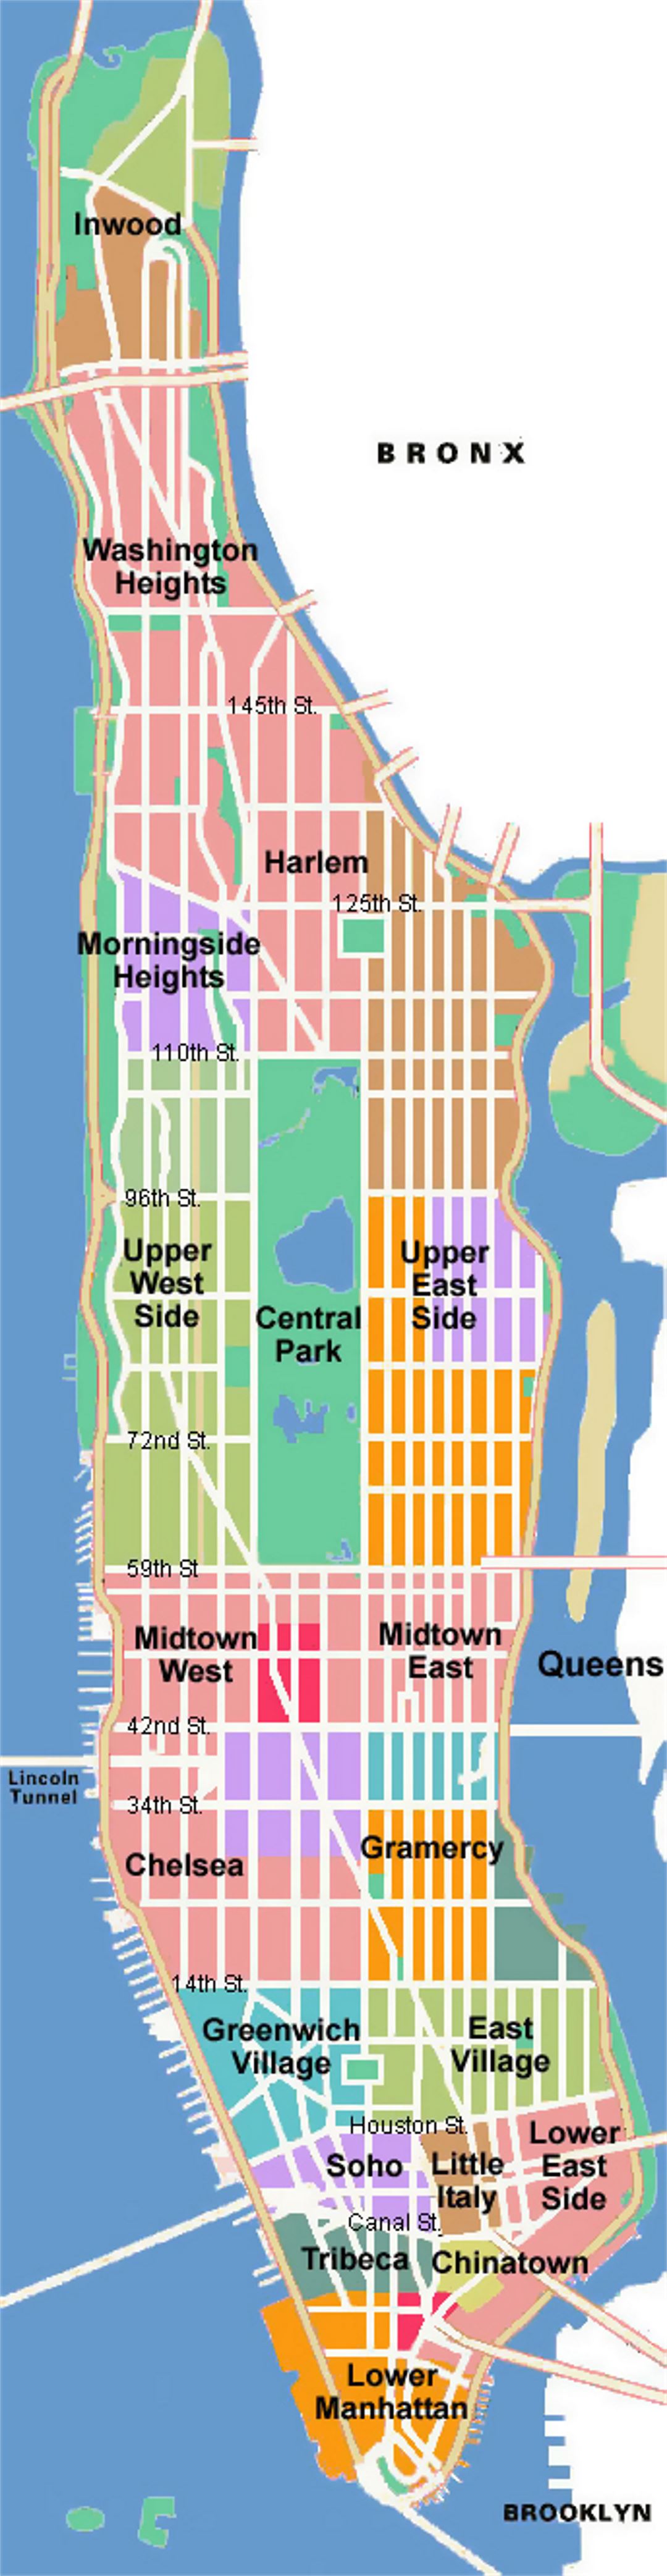 Schematic map of Manhattan, NYC